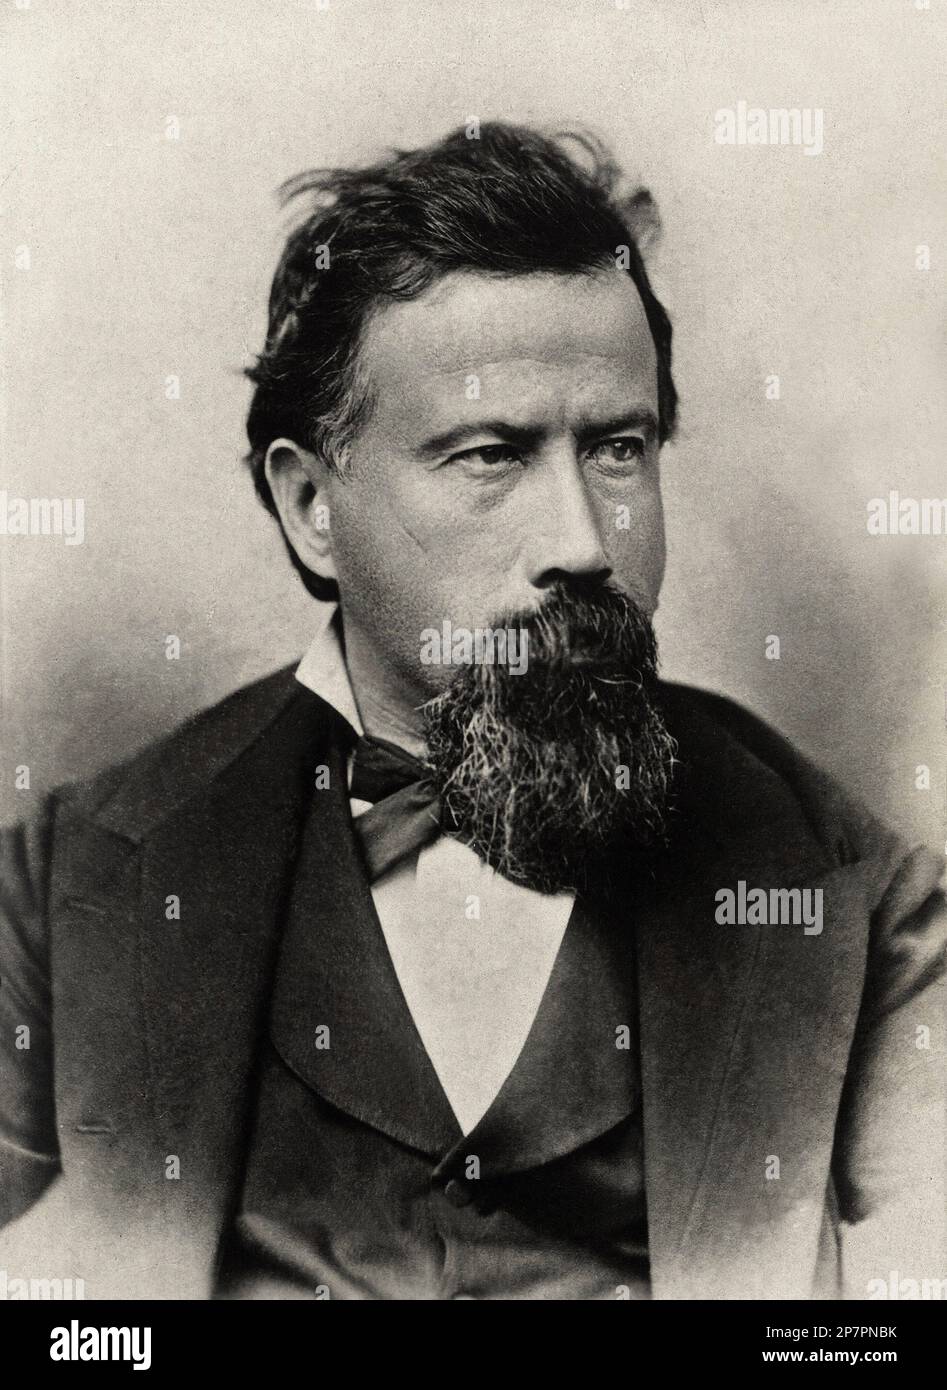 1875 c, ITALIA : il compositore italiano AMILCARE PONCHIELLI ( 1834 - 1886 ), autore DI LA GIOCONDA ( 1876 ). - MUSICA CLASSICA - CLASSICA - OPERA - COMPOSITORE Lirico - ritratto - ritratto - papillon - cravatta - barba - LIRICA - MUSICA --- Archivio GBB Foto Stock